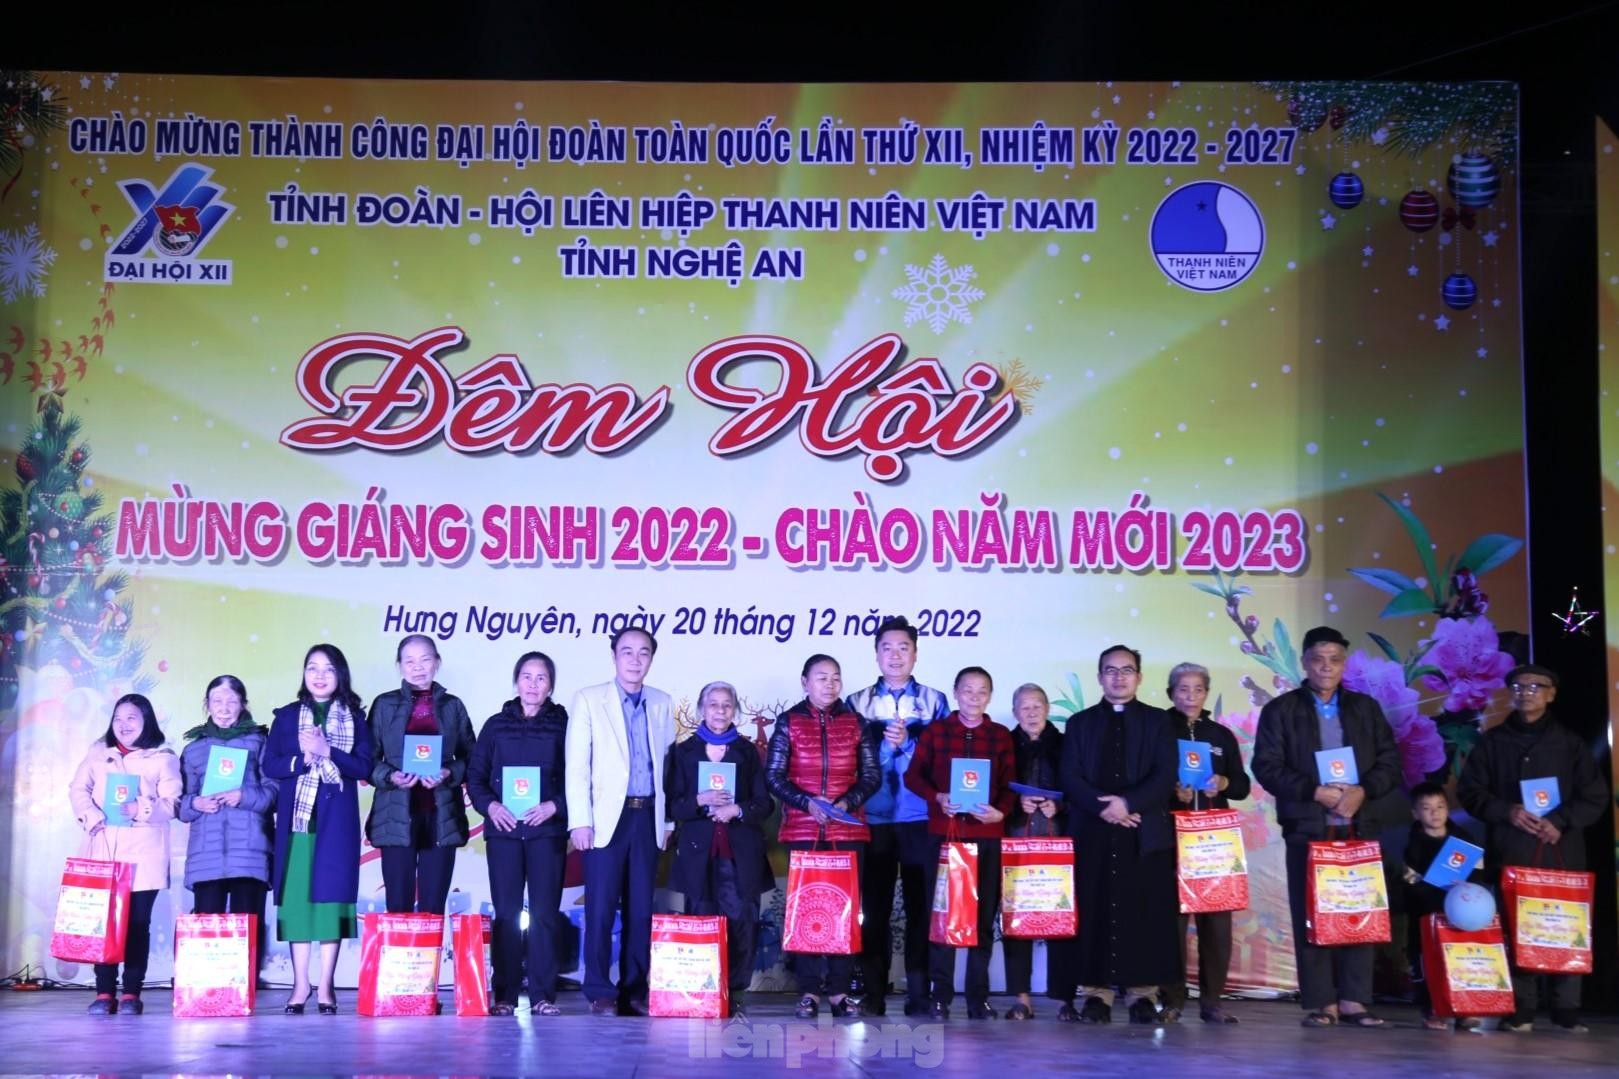 Tỉnh Đoàn, Hội LHTN tỉnh Nghệ An chúc mừng Giáng sinh 2022 ảnh 10